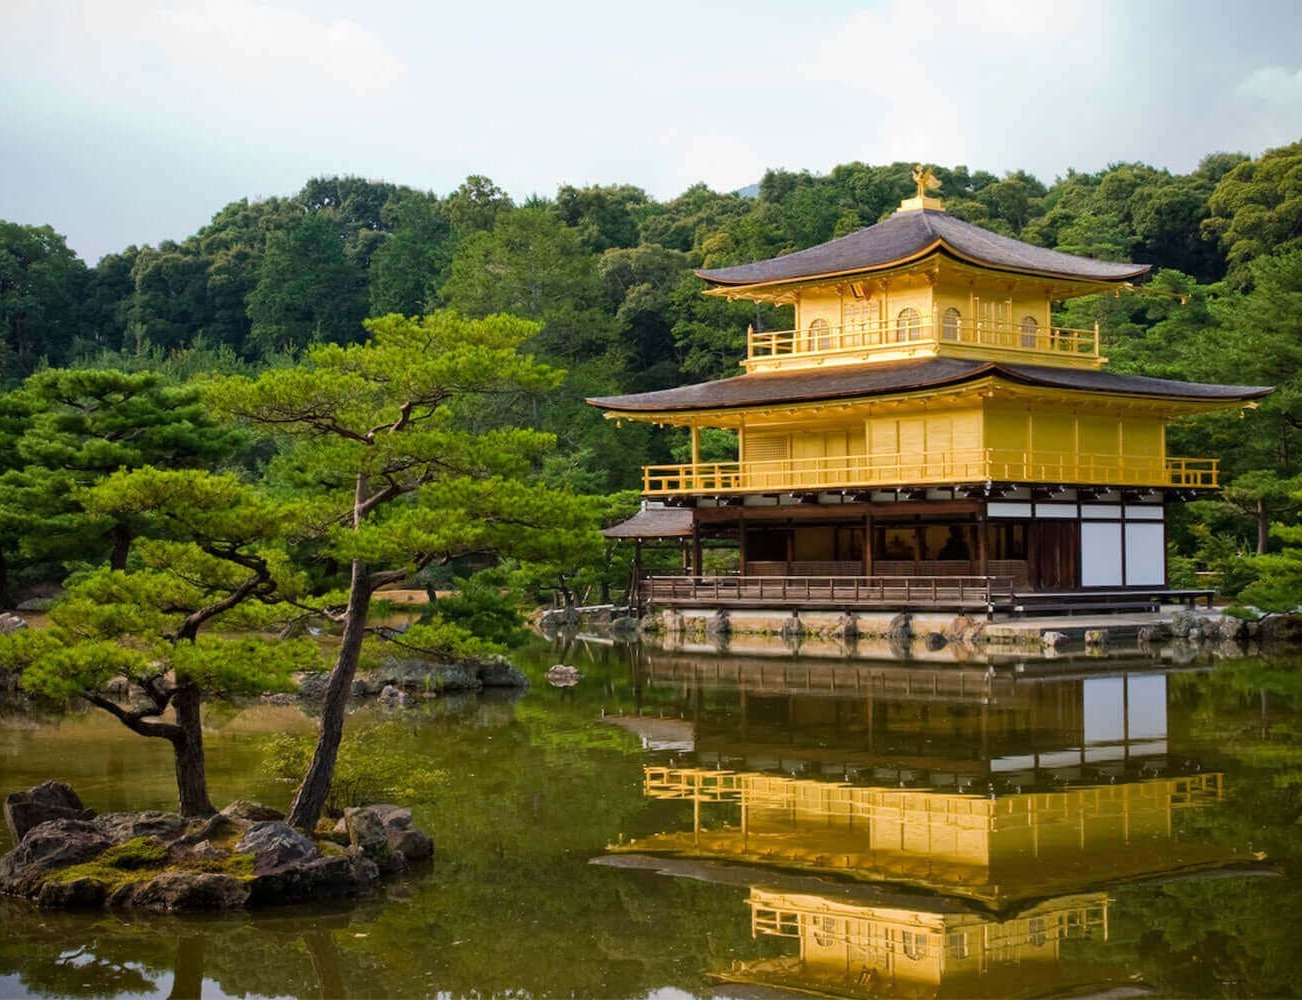 İlginç Kültürü ile Bizi Sürekli Şaşırtan Ülke: Japonya